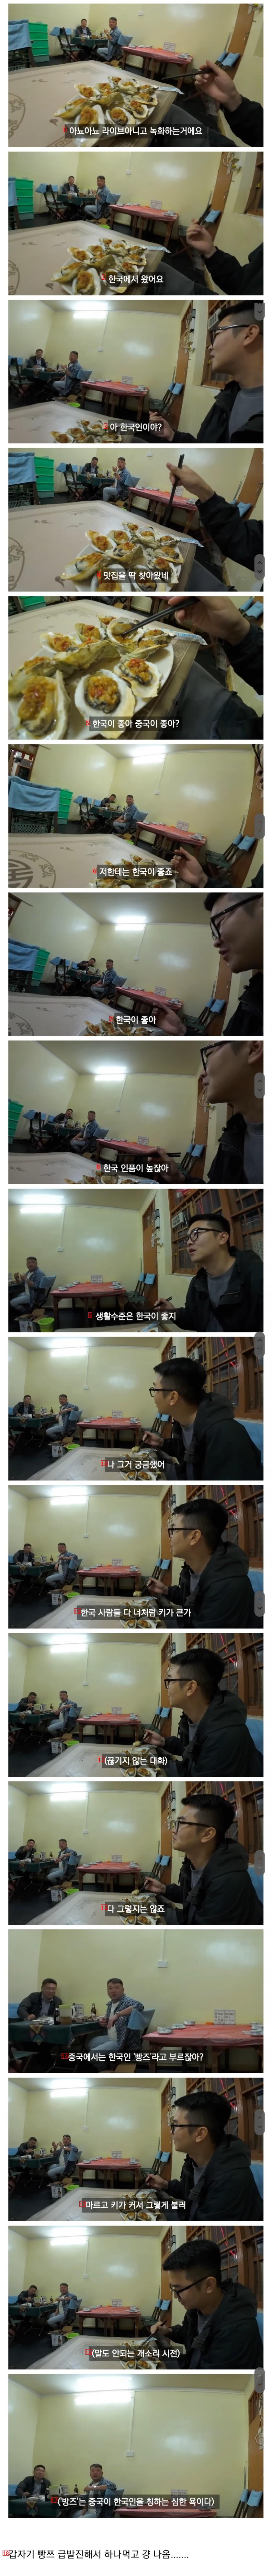 중국 여행 중 식당 갔다가 한국에 관심 있는 중국인 만난 유튜버